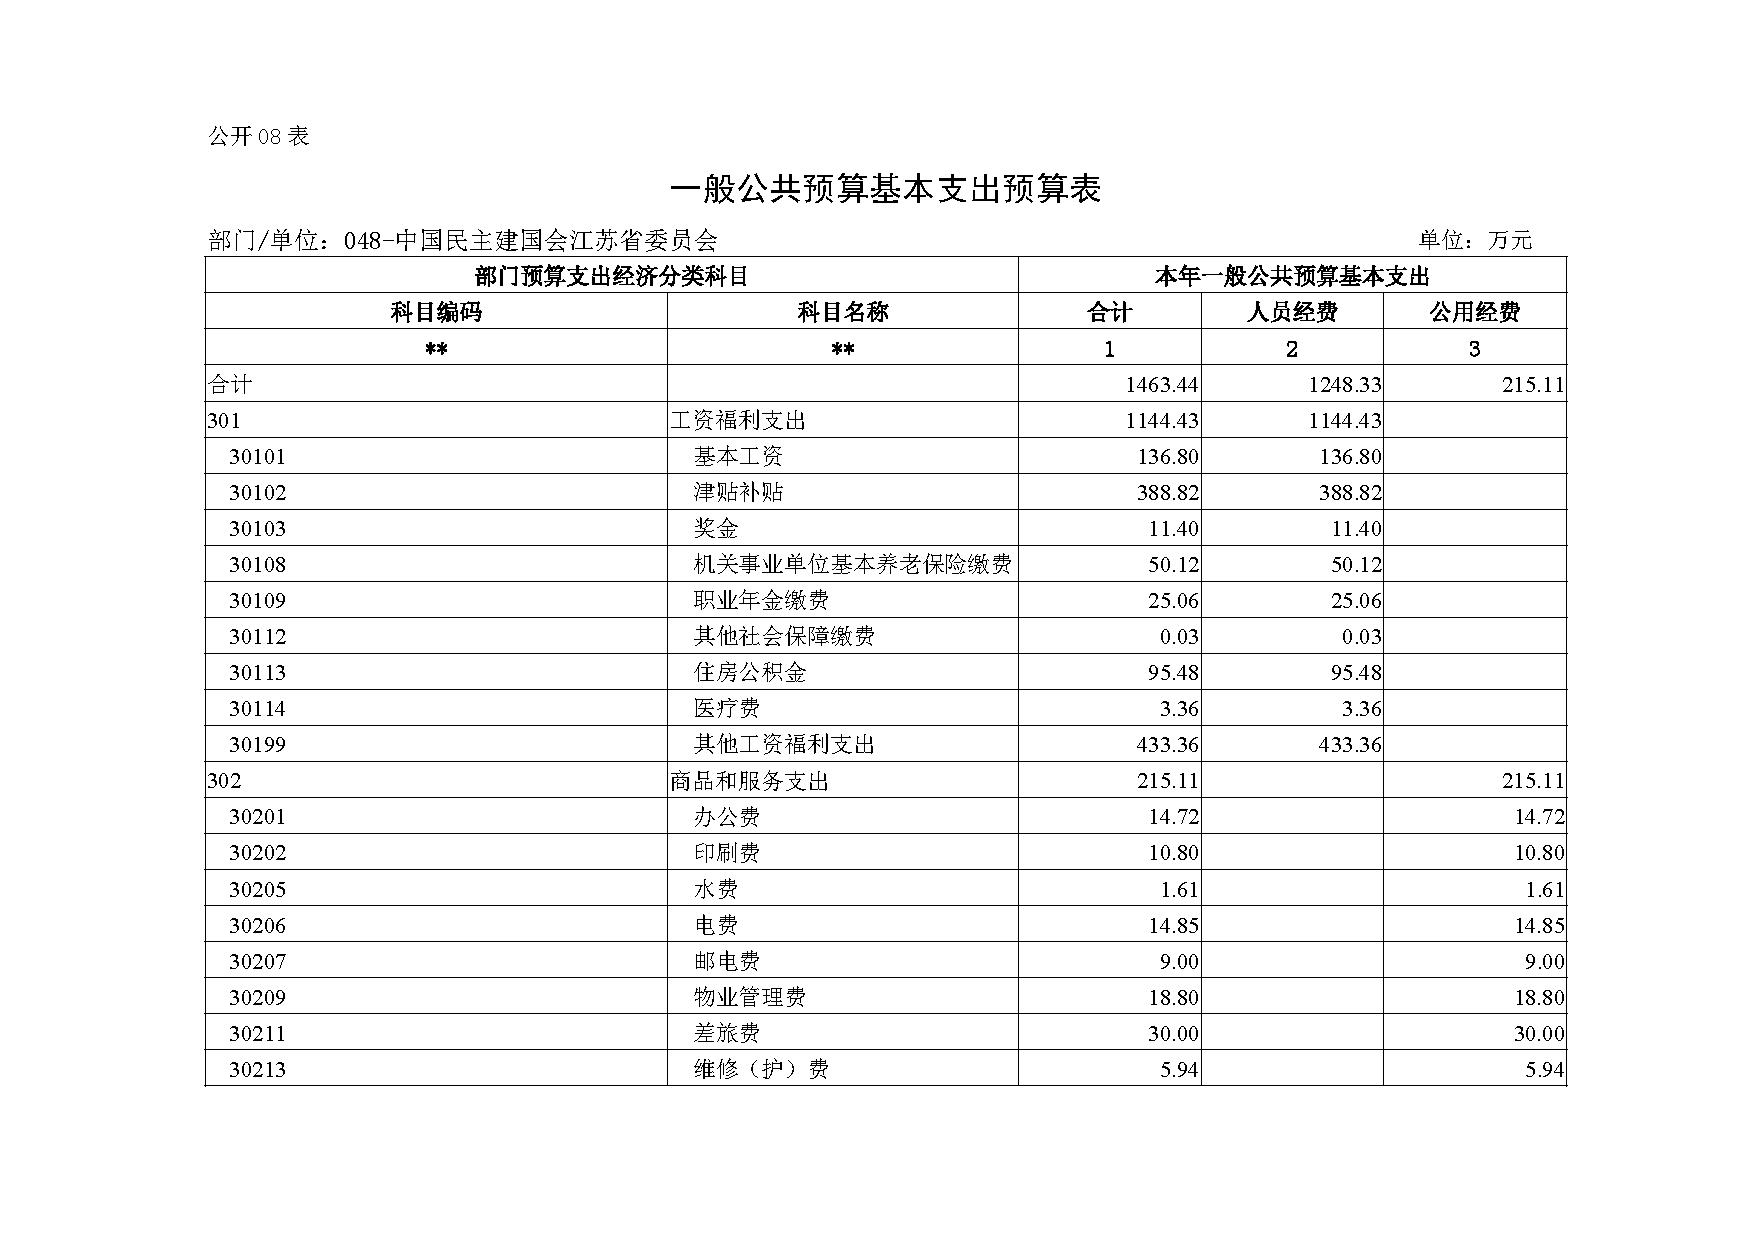 2021年度中国民主建国会江苏省委员会部门预算公开-16.jpg